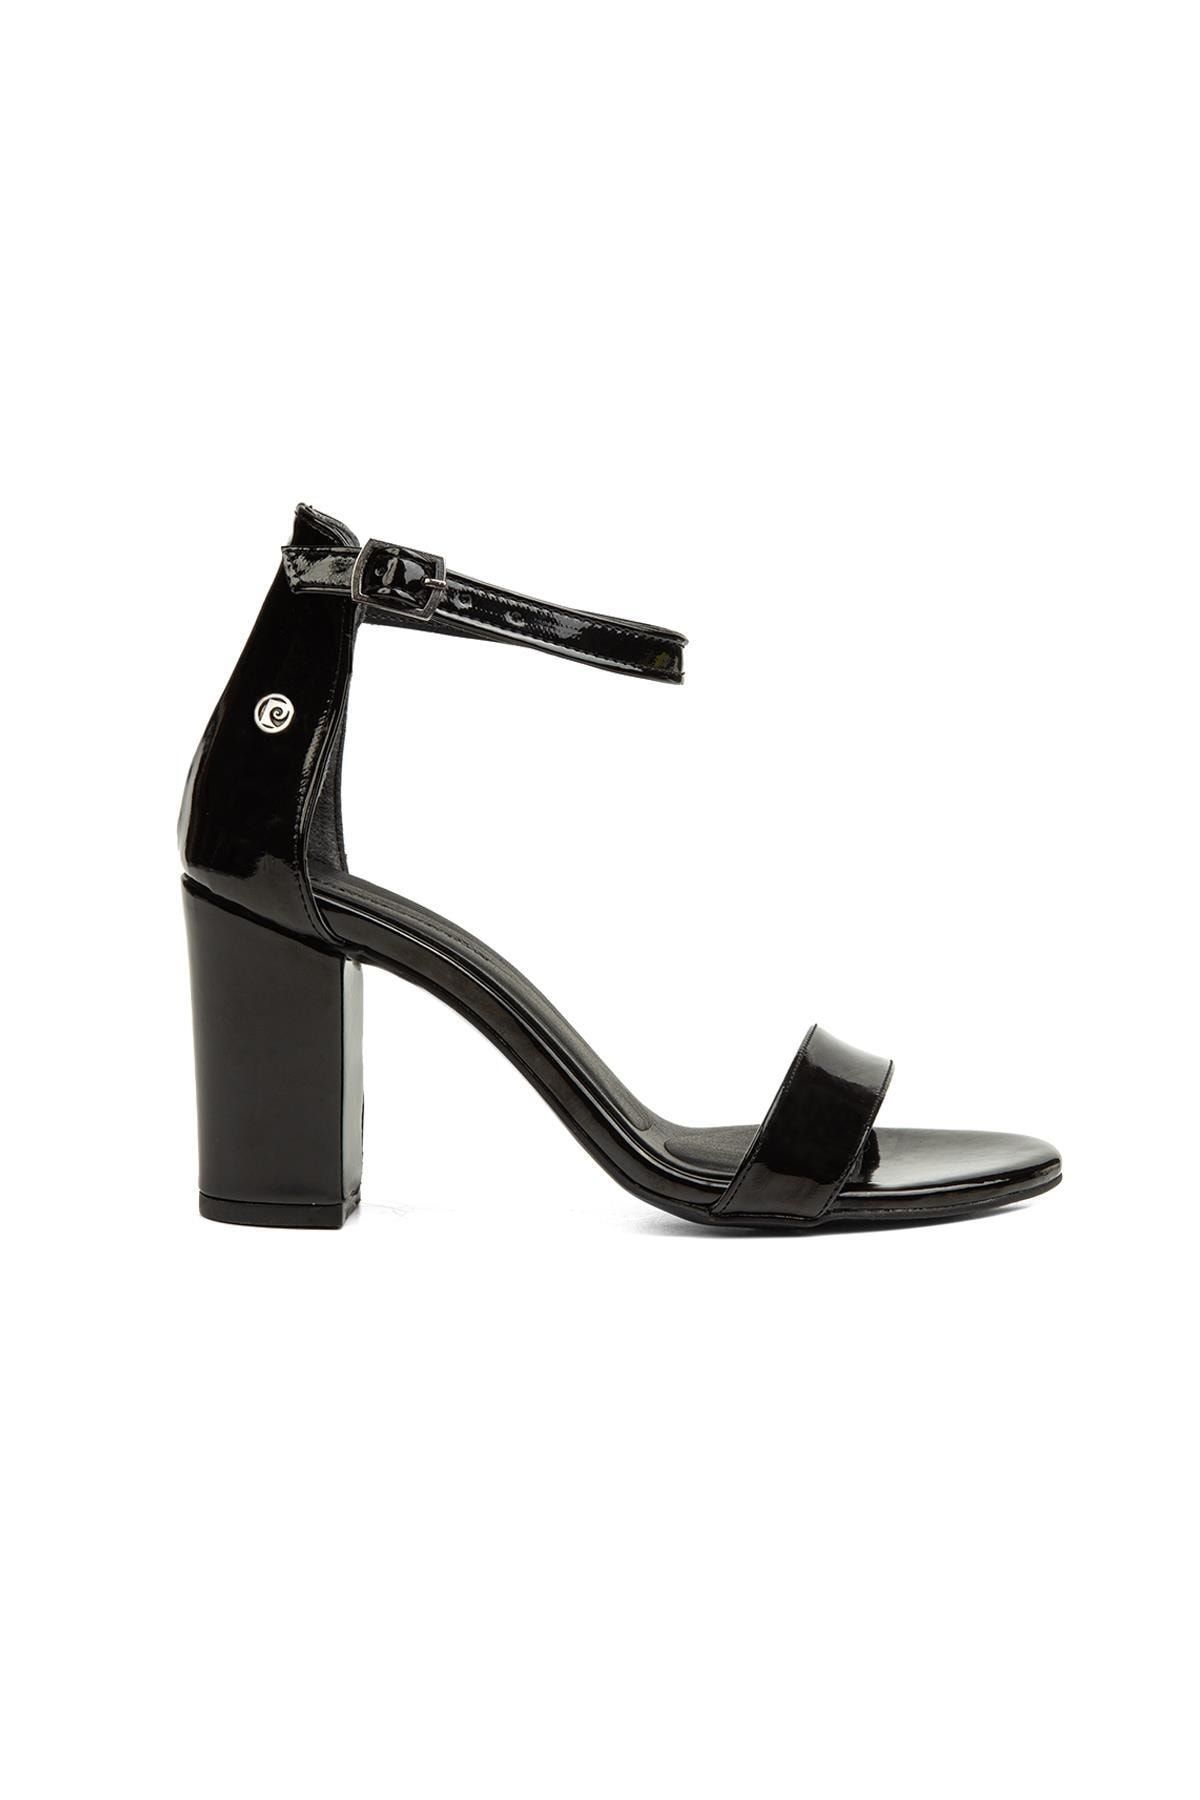 Pierre Cardin ® | Pc-52200-3951 Rugan Siyah - Kadın Topuklu Ayakkabı